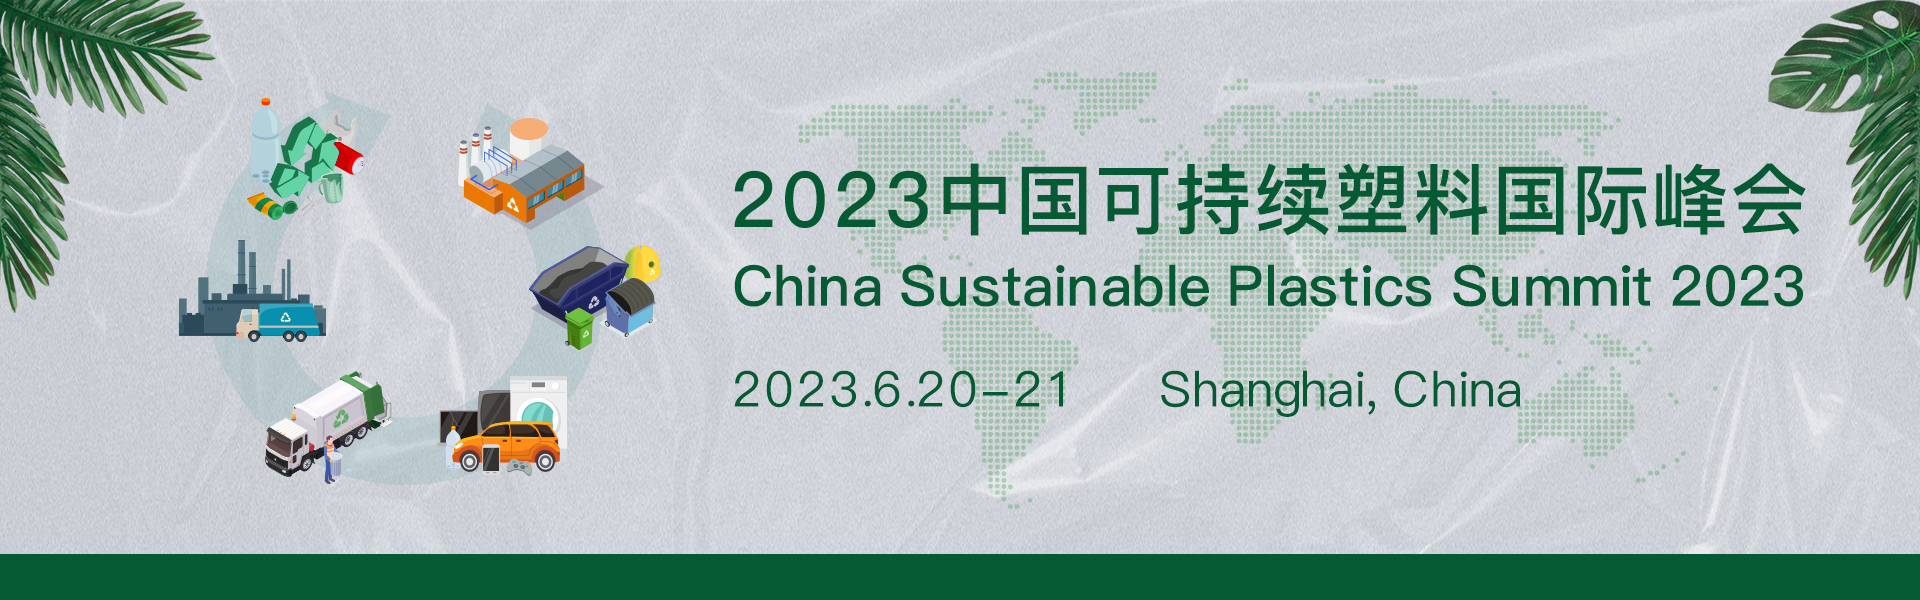 2023年中国可持续塑料峰会